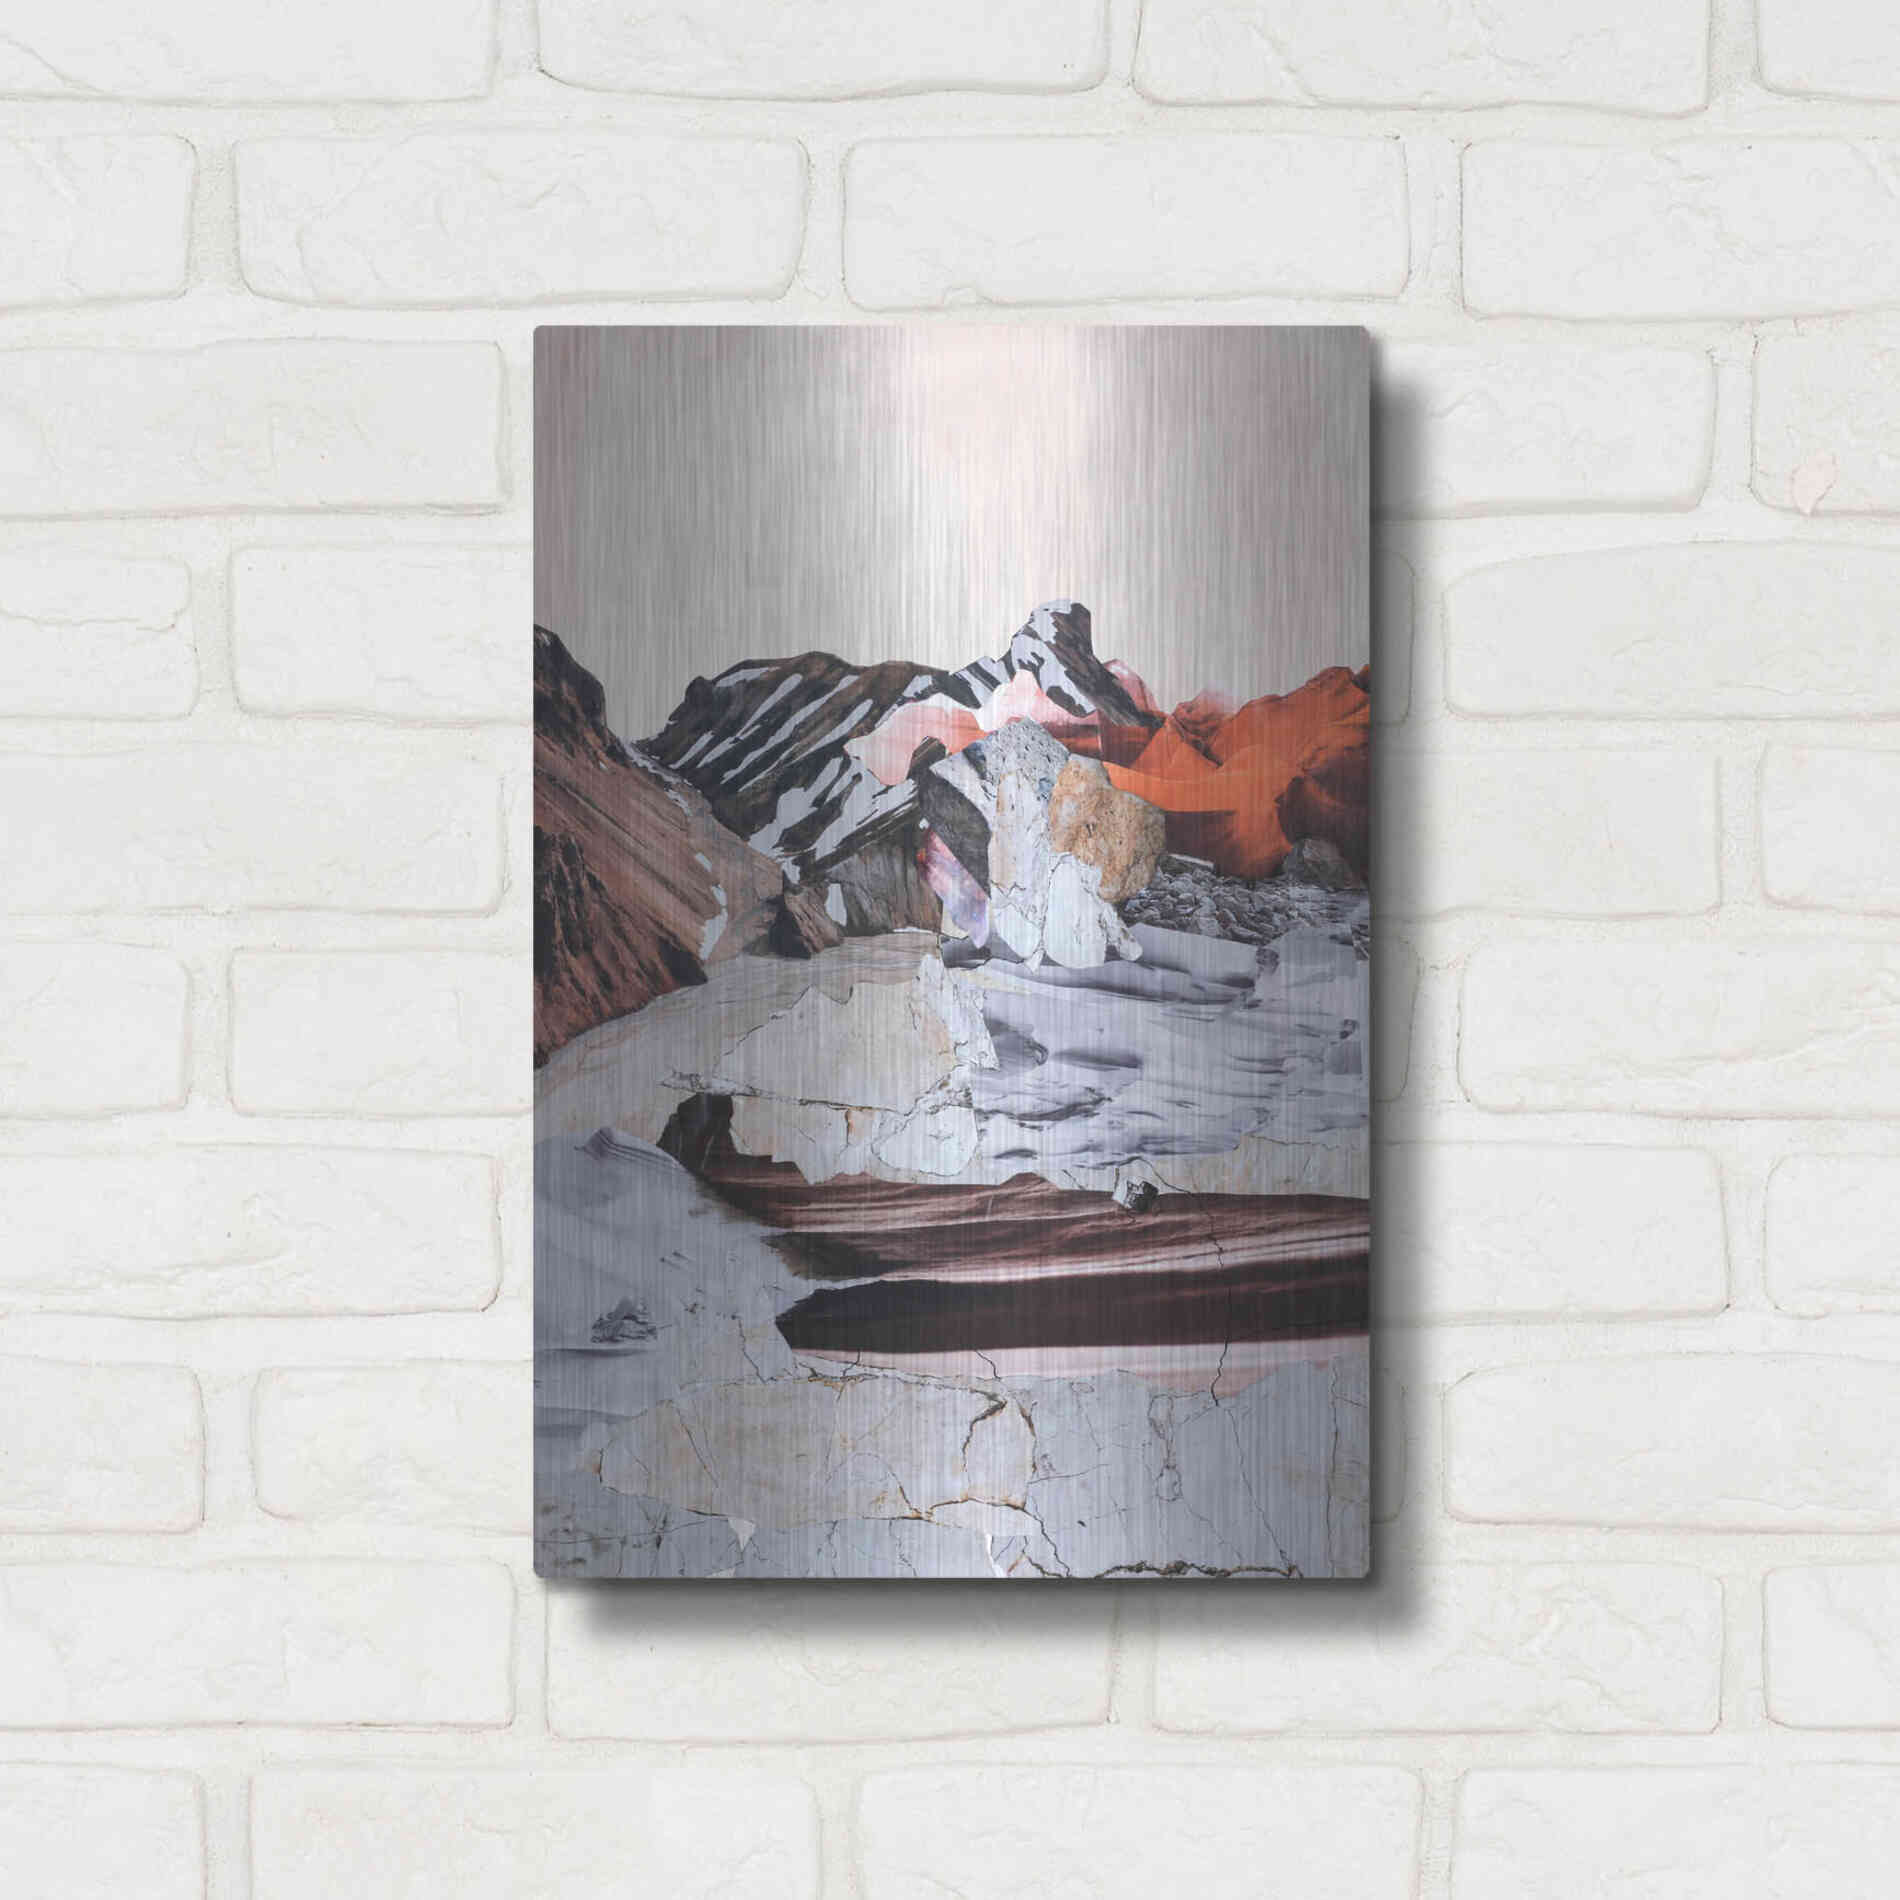 Luxe Metal Art 'New Era 1' by Design Fabrikken, Metal Wall Art,12x16